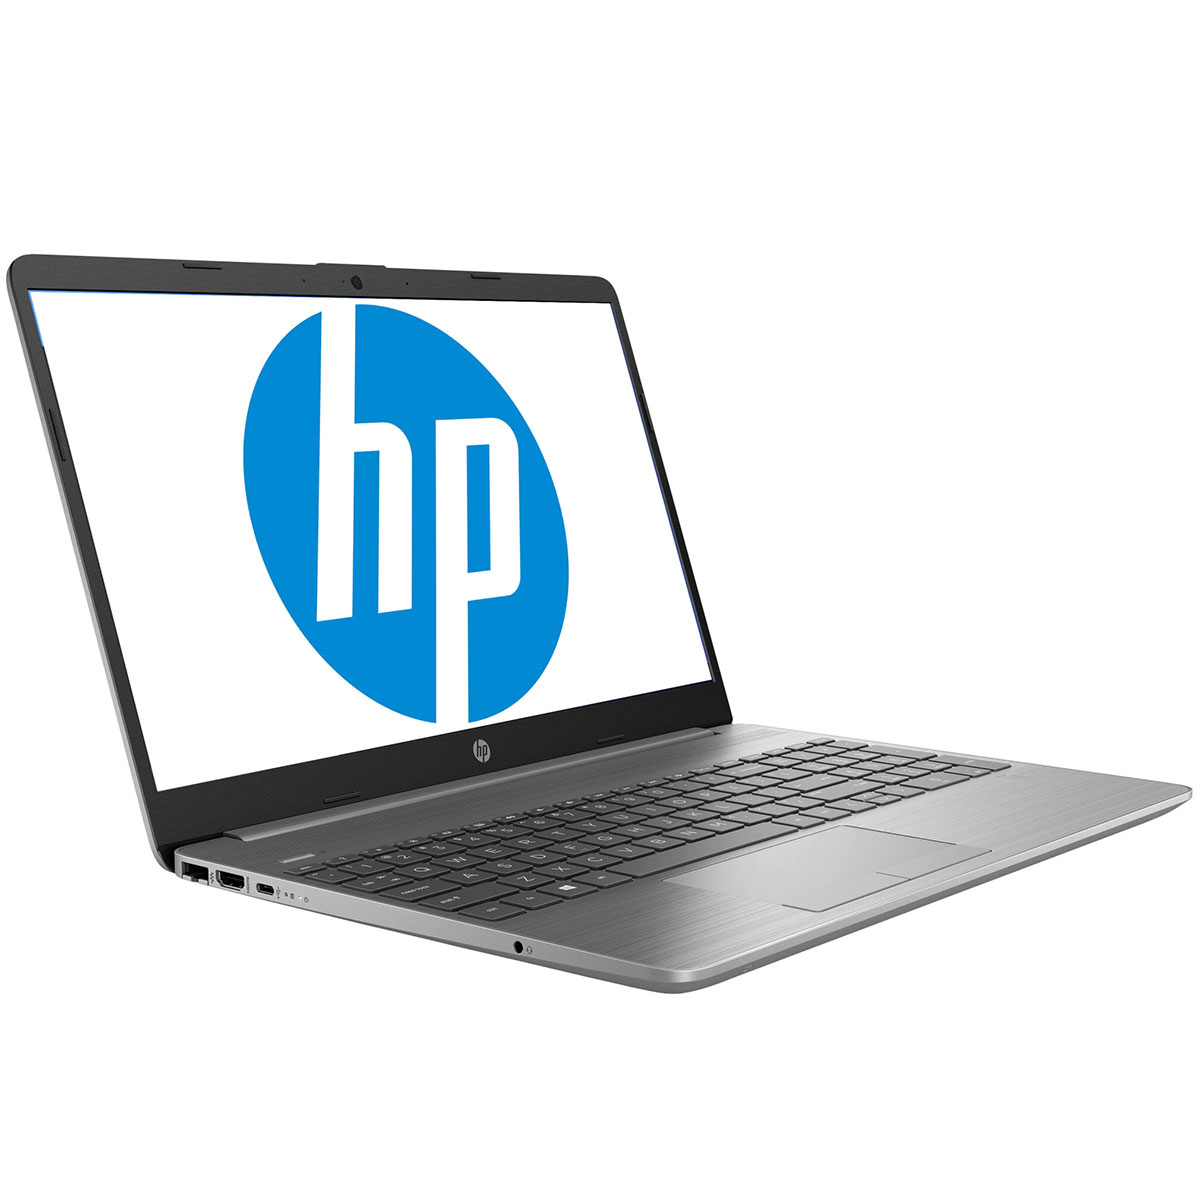 HP 250 G8 PC Portable i3-1005G1 4 GB 1TB 15.6 FreeDos (27K10EA)